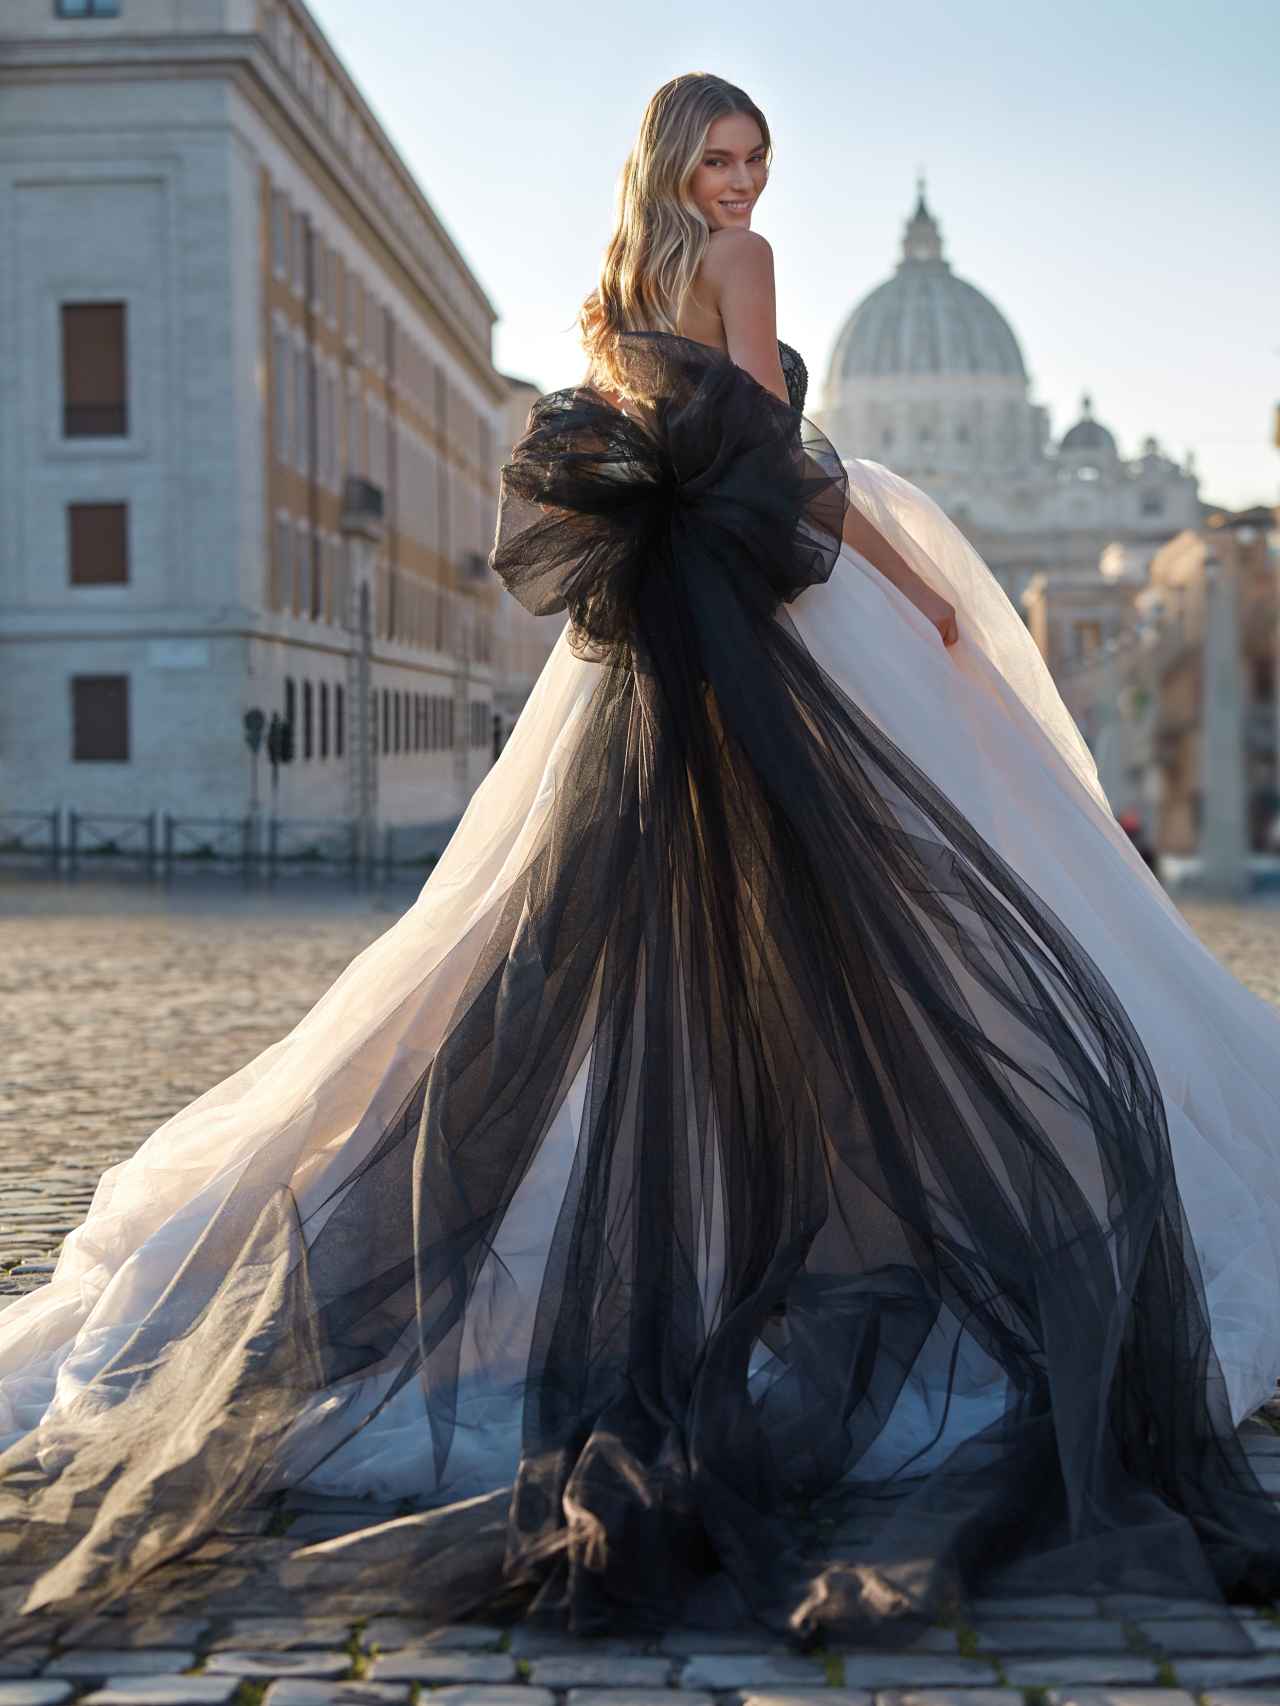 Fotografía promocional cedida por la empresa española Pronovias en donde se aprecia el modelo Eldora en blanco y negro de Nicole Milano.